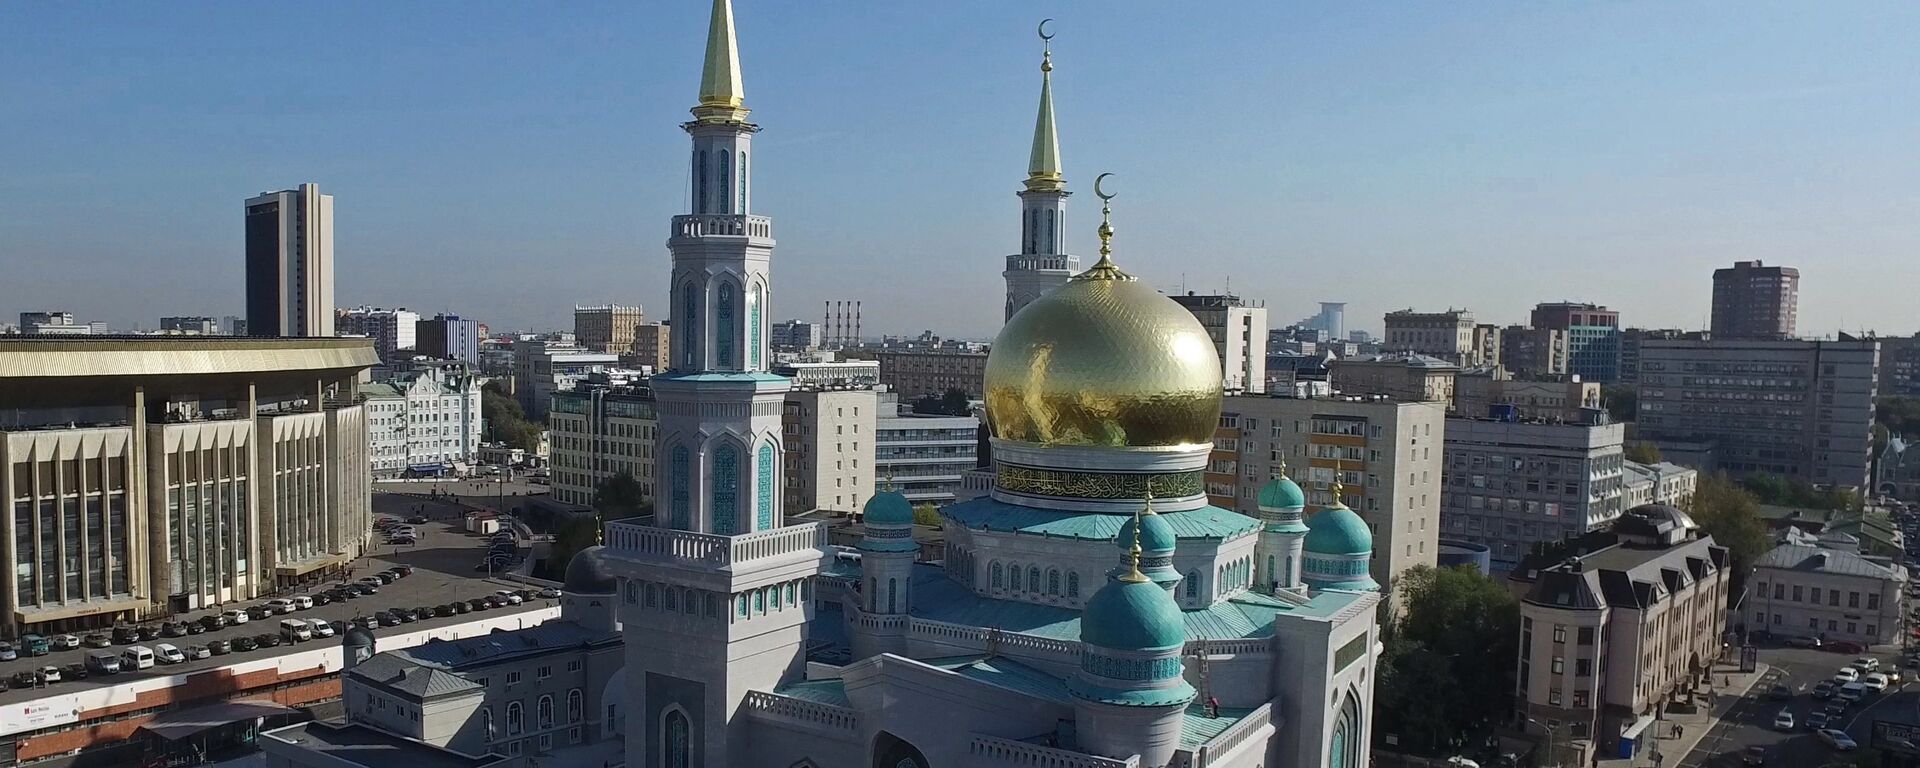 Московская соборная мечеть открылась после реконструкции - Sputnik Ўзбекистон, 1920, 12.05.2021